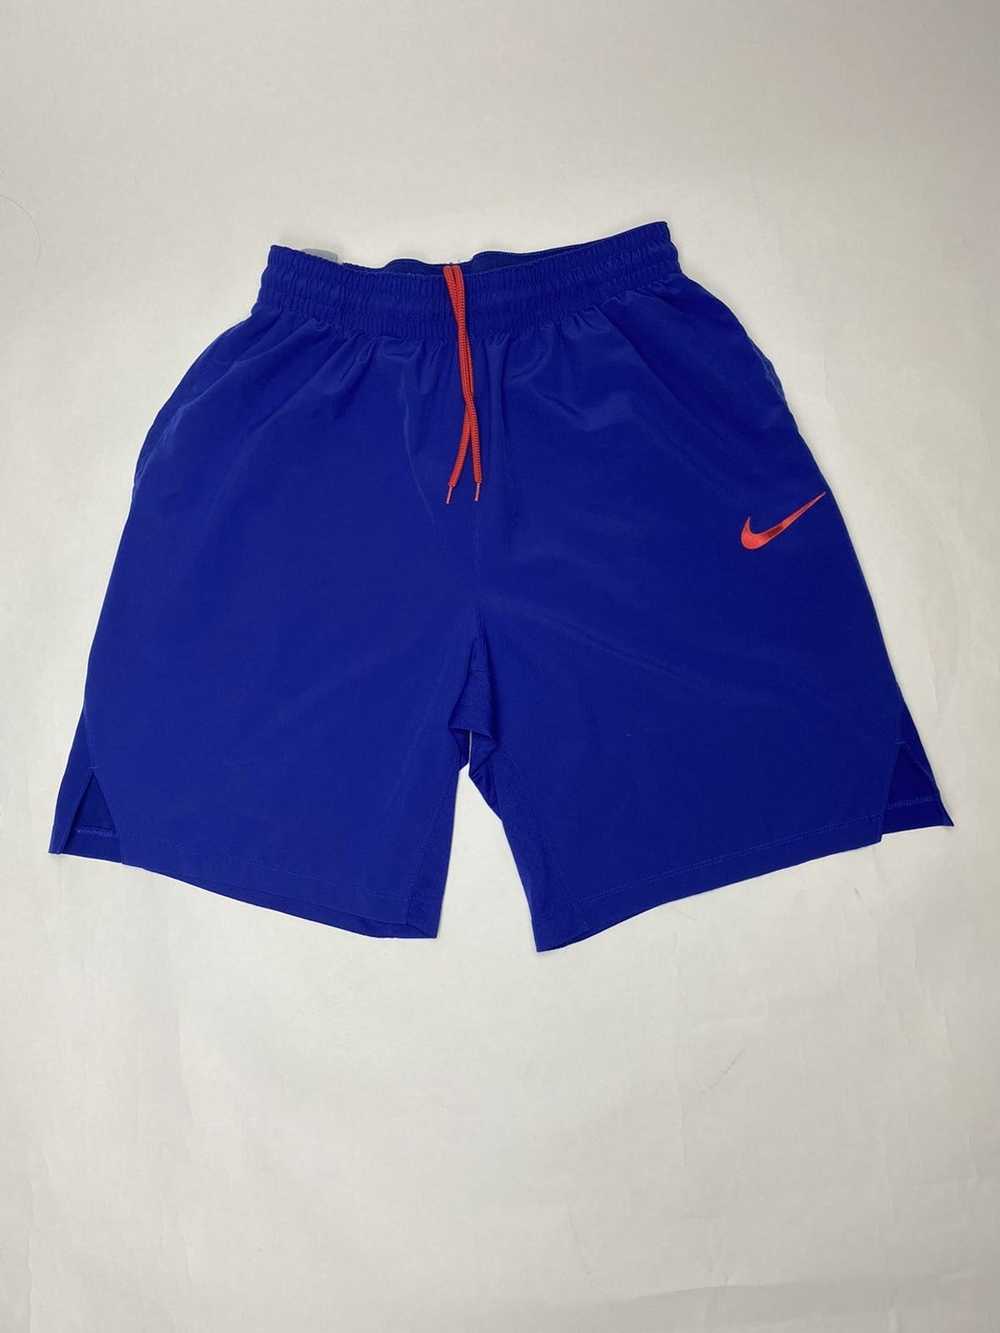 Nike Vintage Nike Elite shorts - image 7